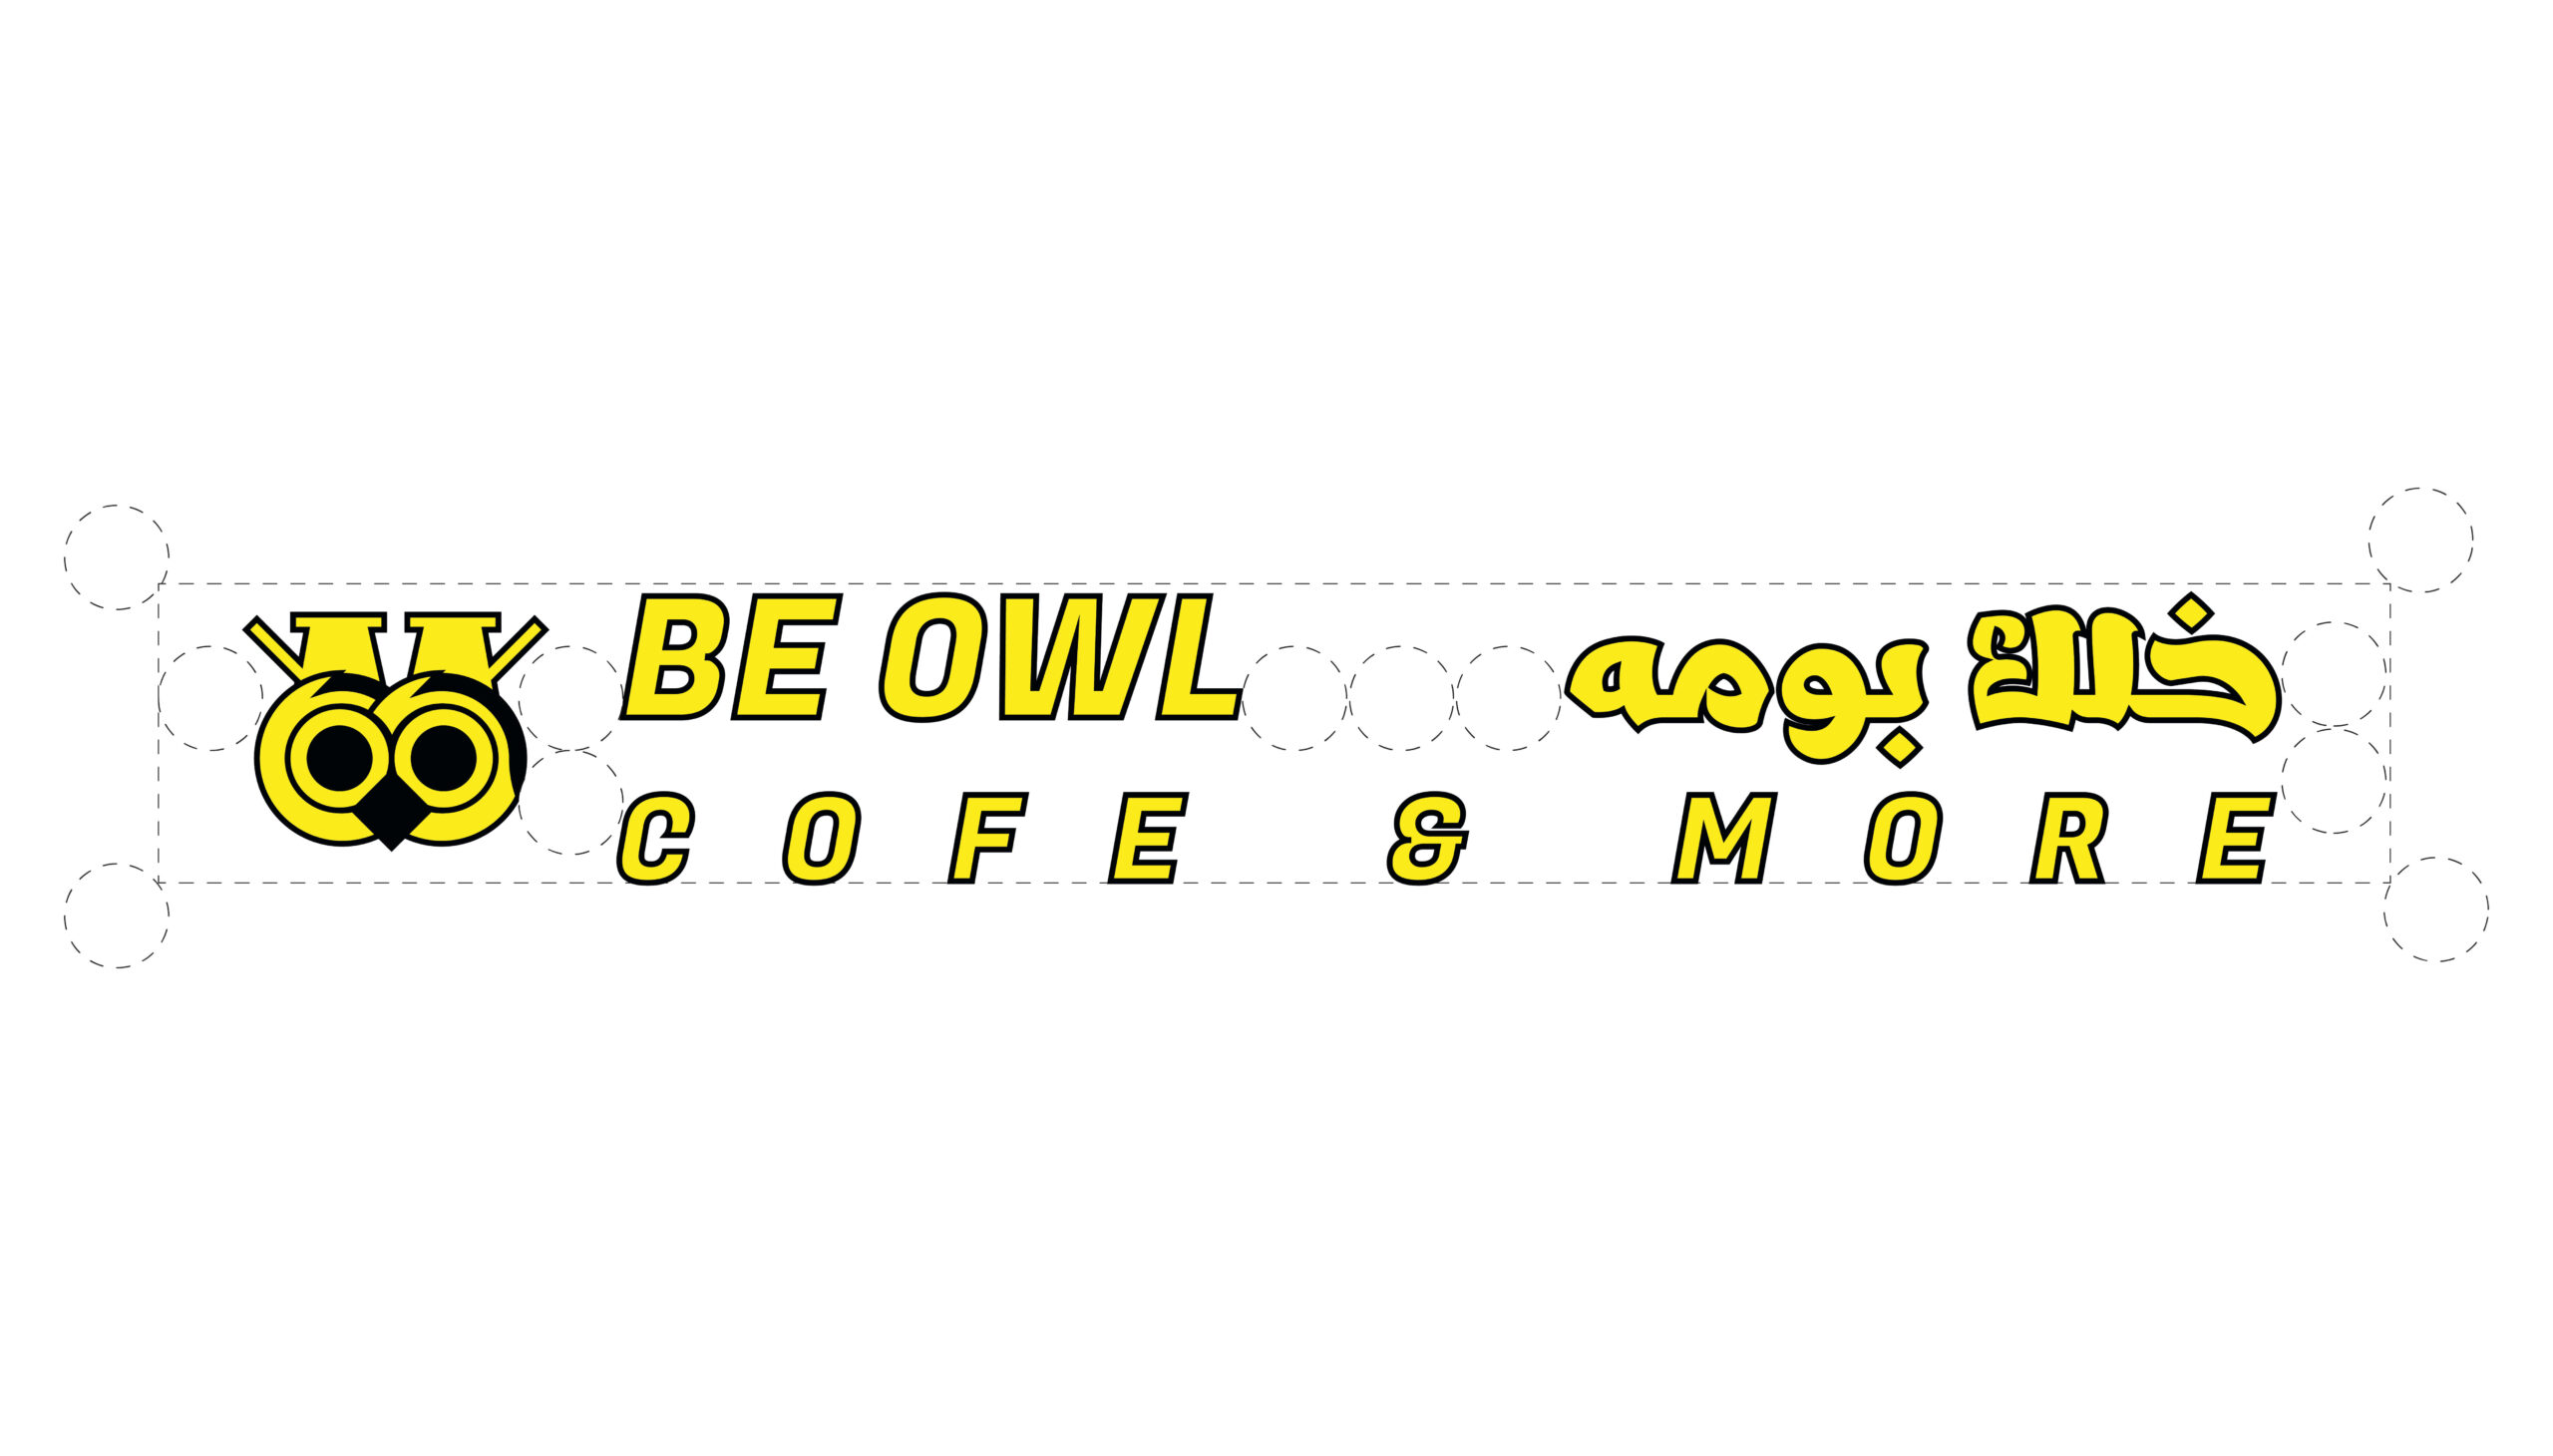 be owl cafe logo variations 05 grid